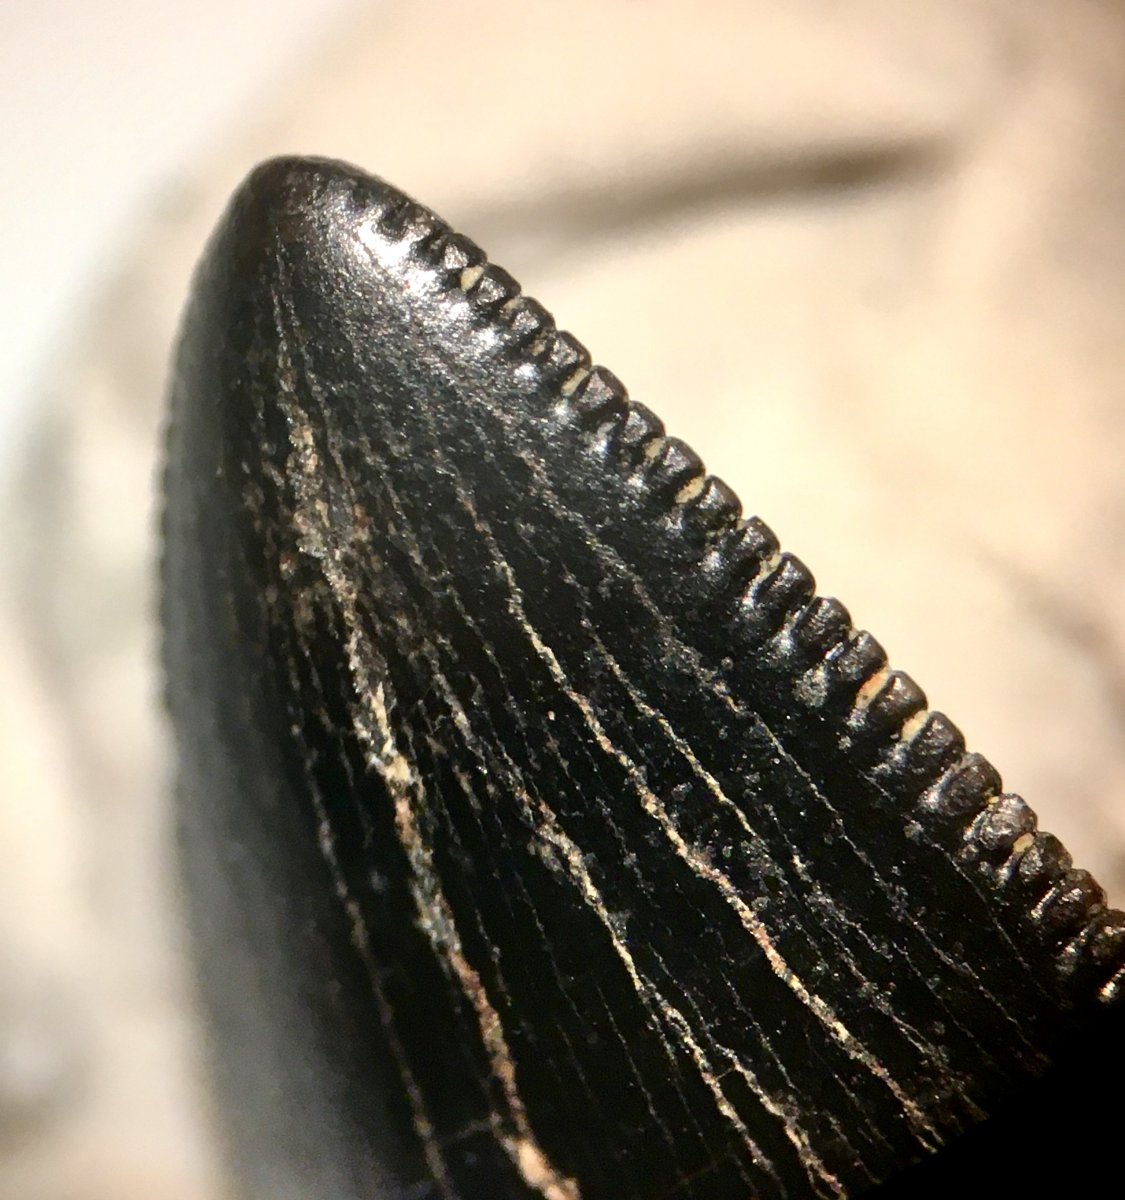 Juvenile T. rex tooth tip